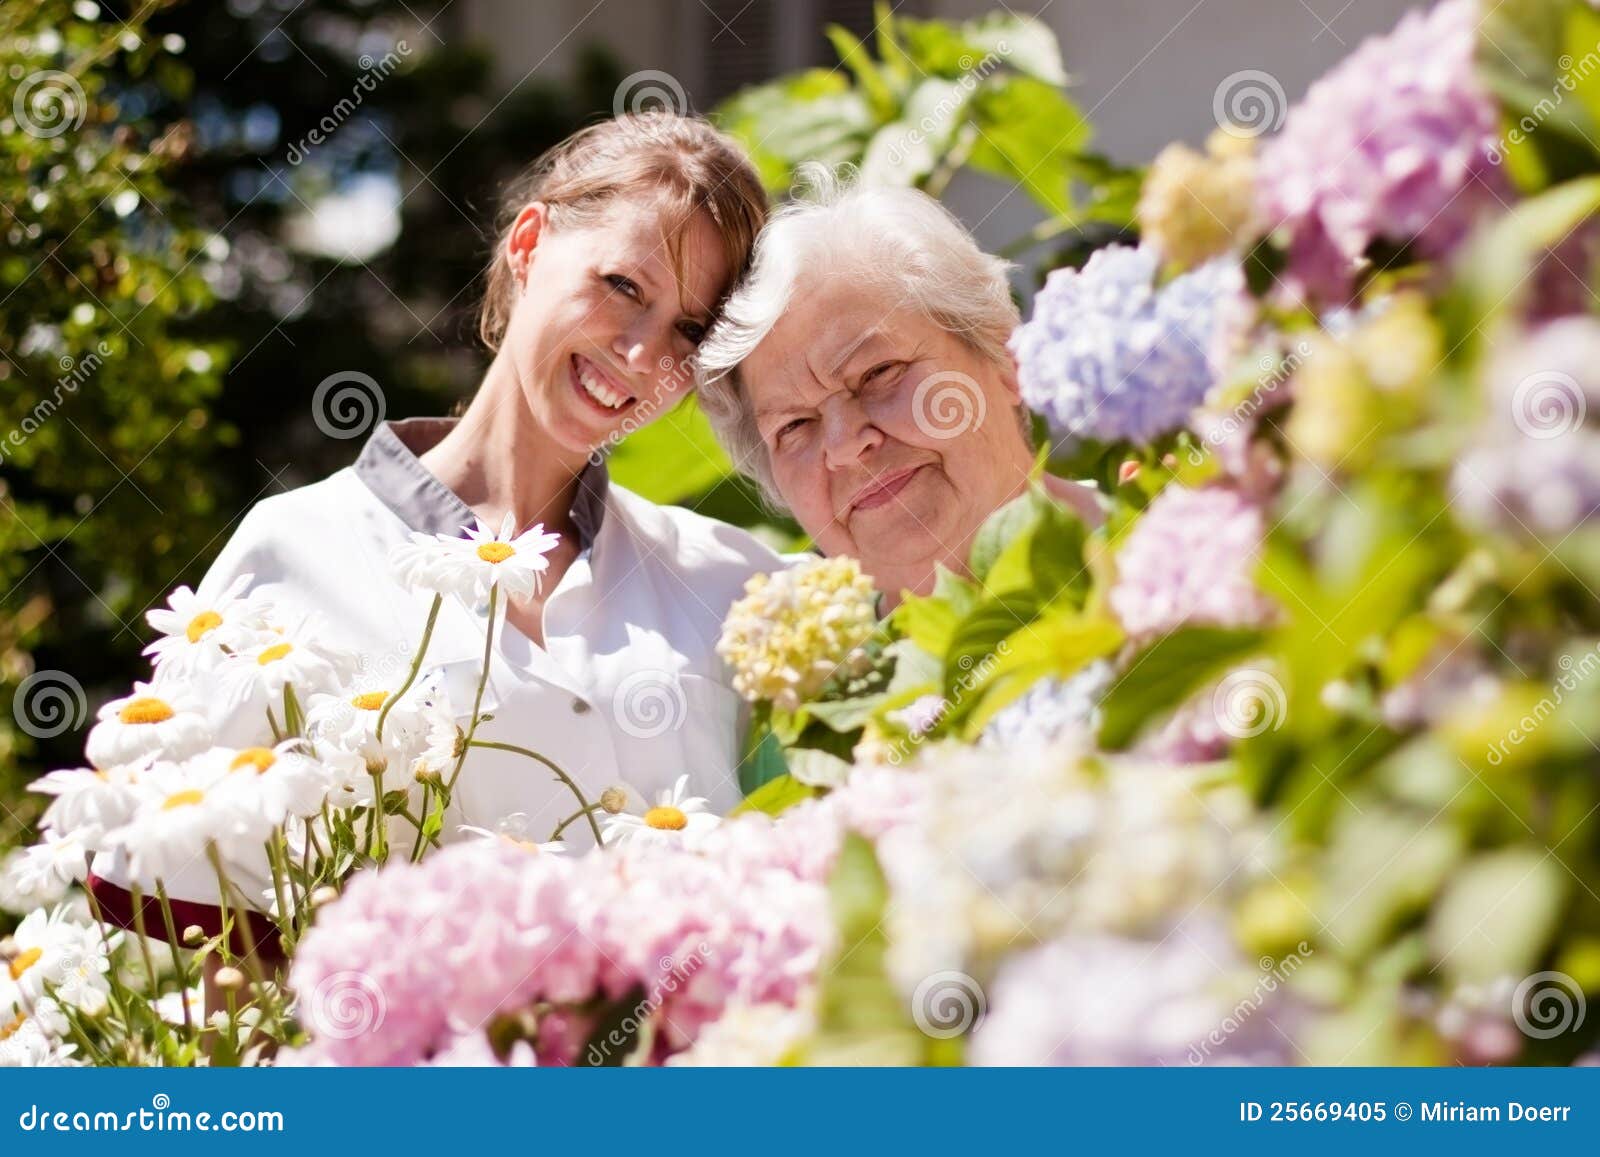 geriatric nurse with elderly woman in the garden